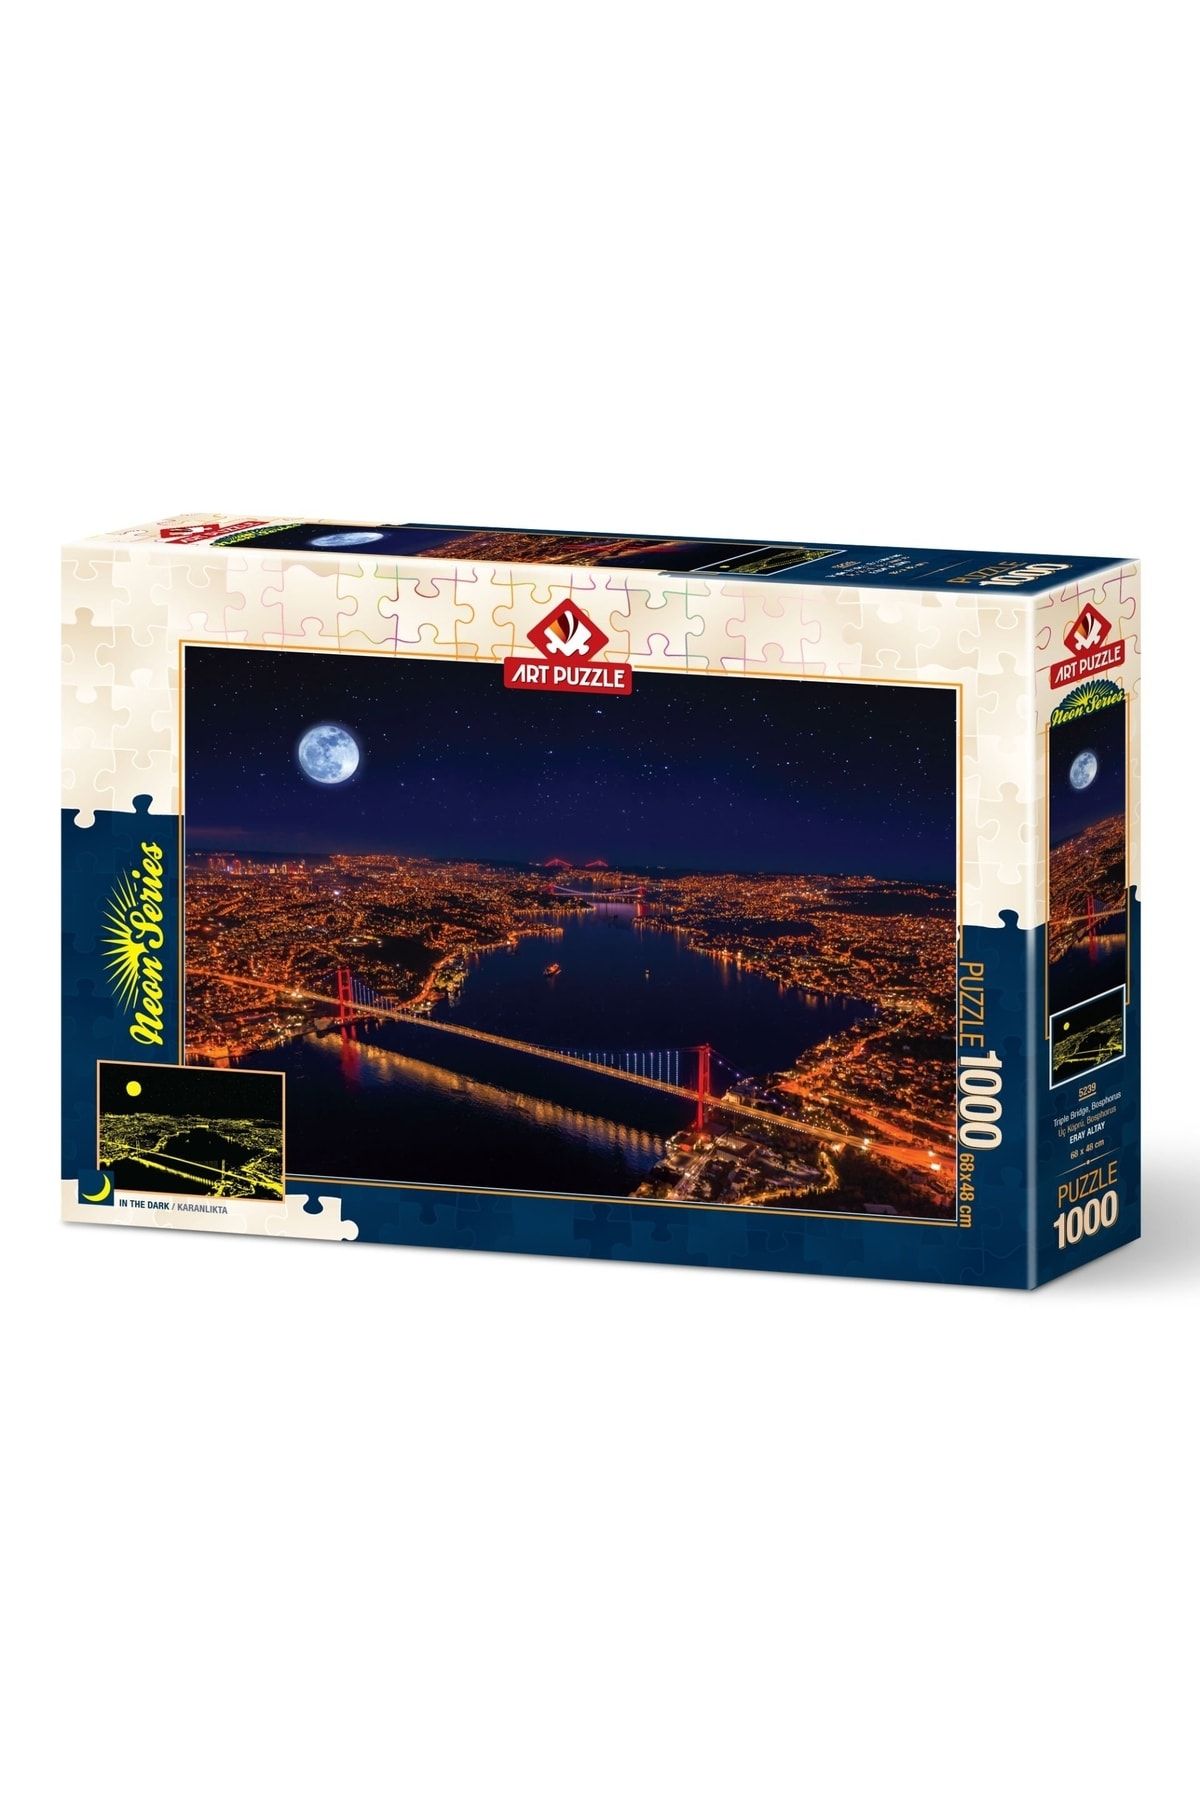 Doğan Oyuncak Dünyası Art Puzzle Üç Köprü, Bosphorus 1000 Parça Neon Puzzle 5239 - Puzzle Seti - Yapboz - Yap-boz Puzzle